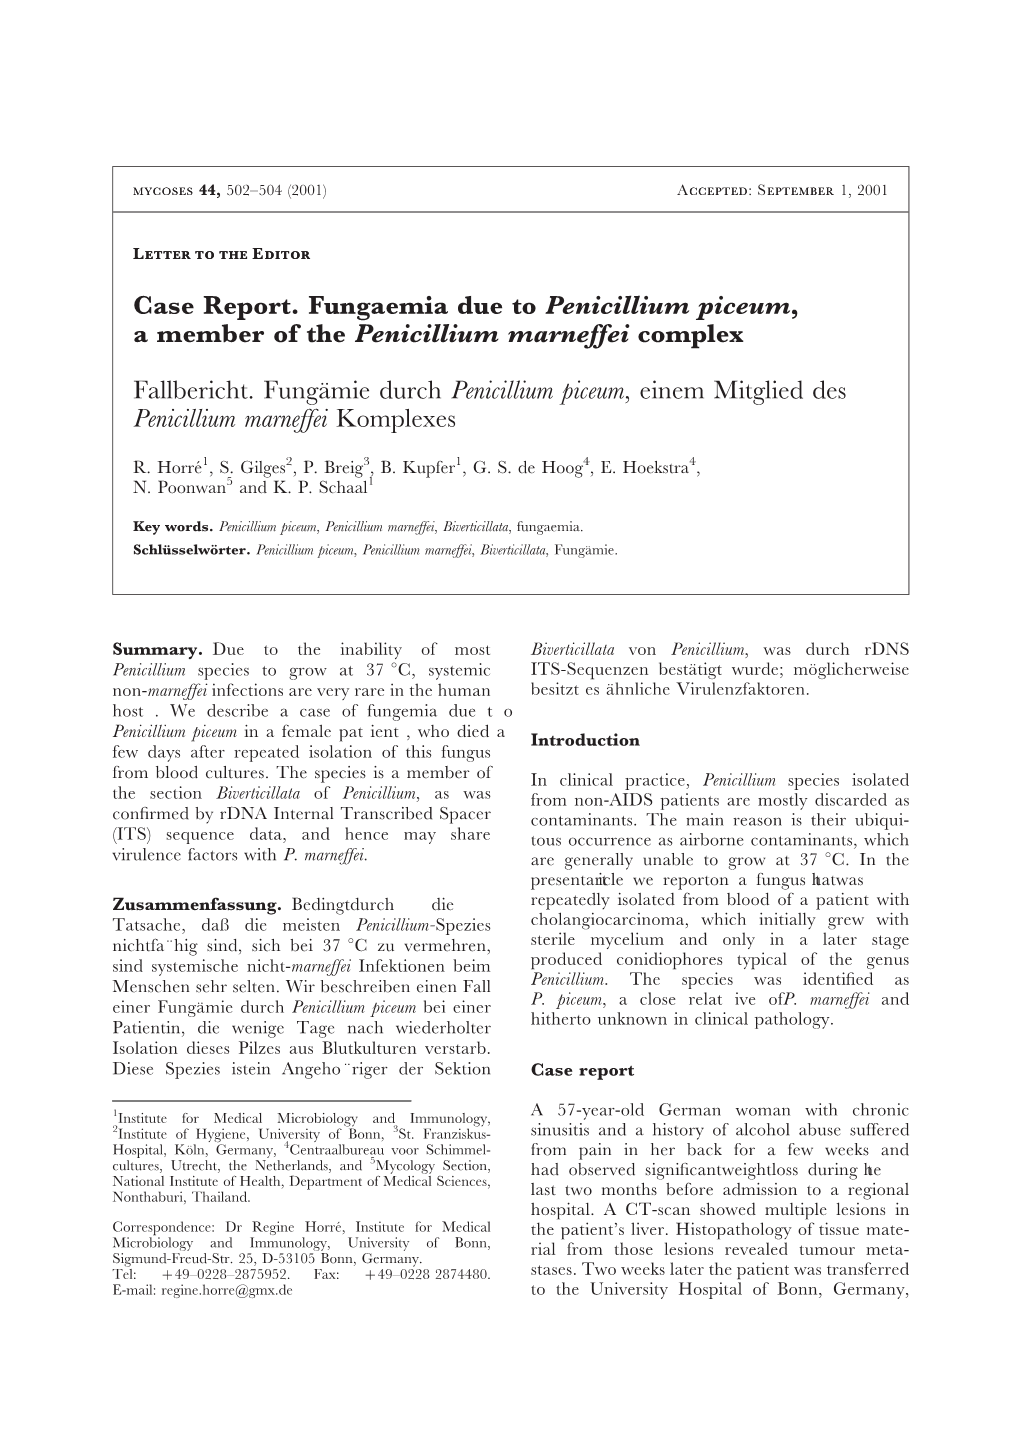 Case Report. Fungaemia Due to Penicillium Piceum, a Member of the Penicillium Marneffei Complex